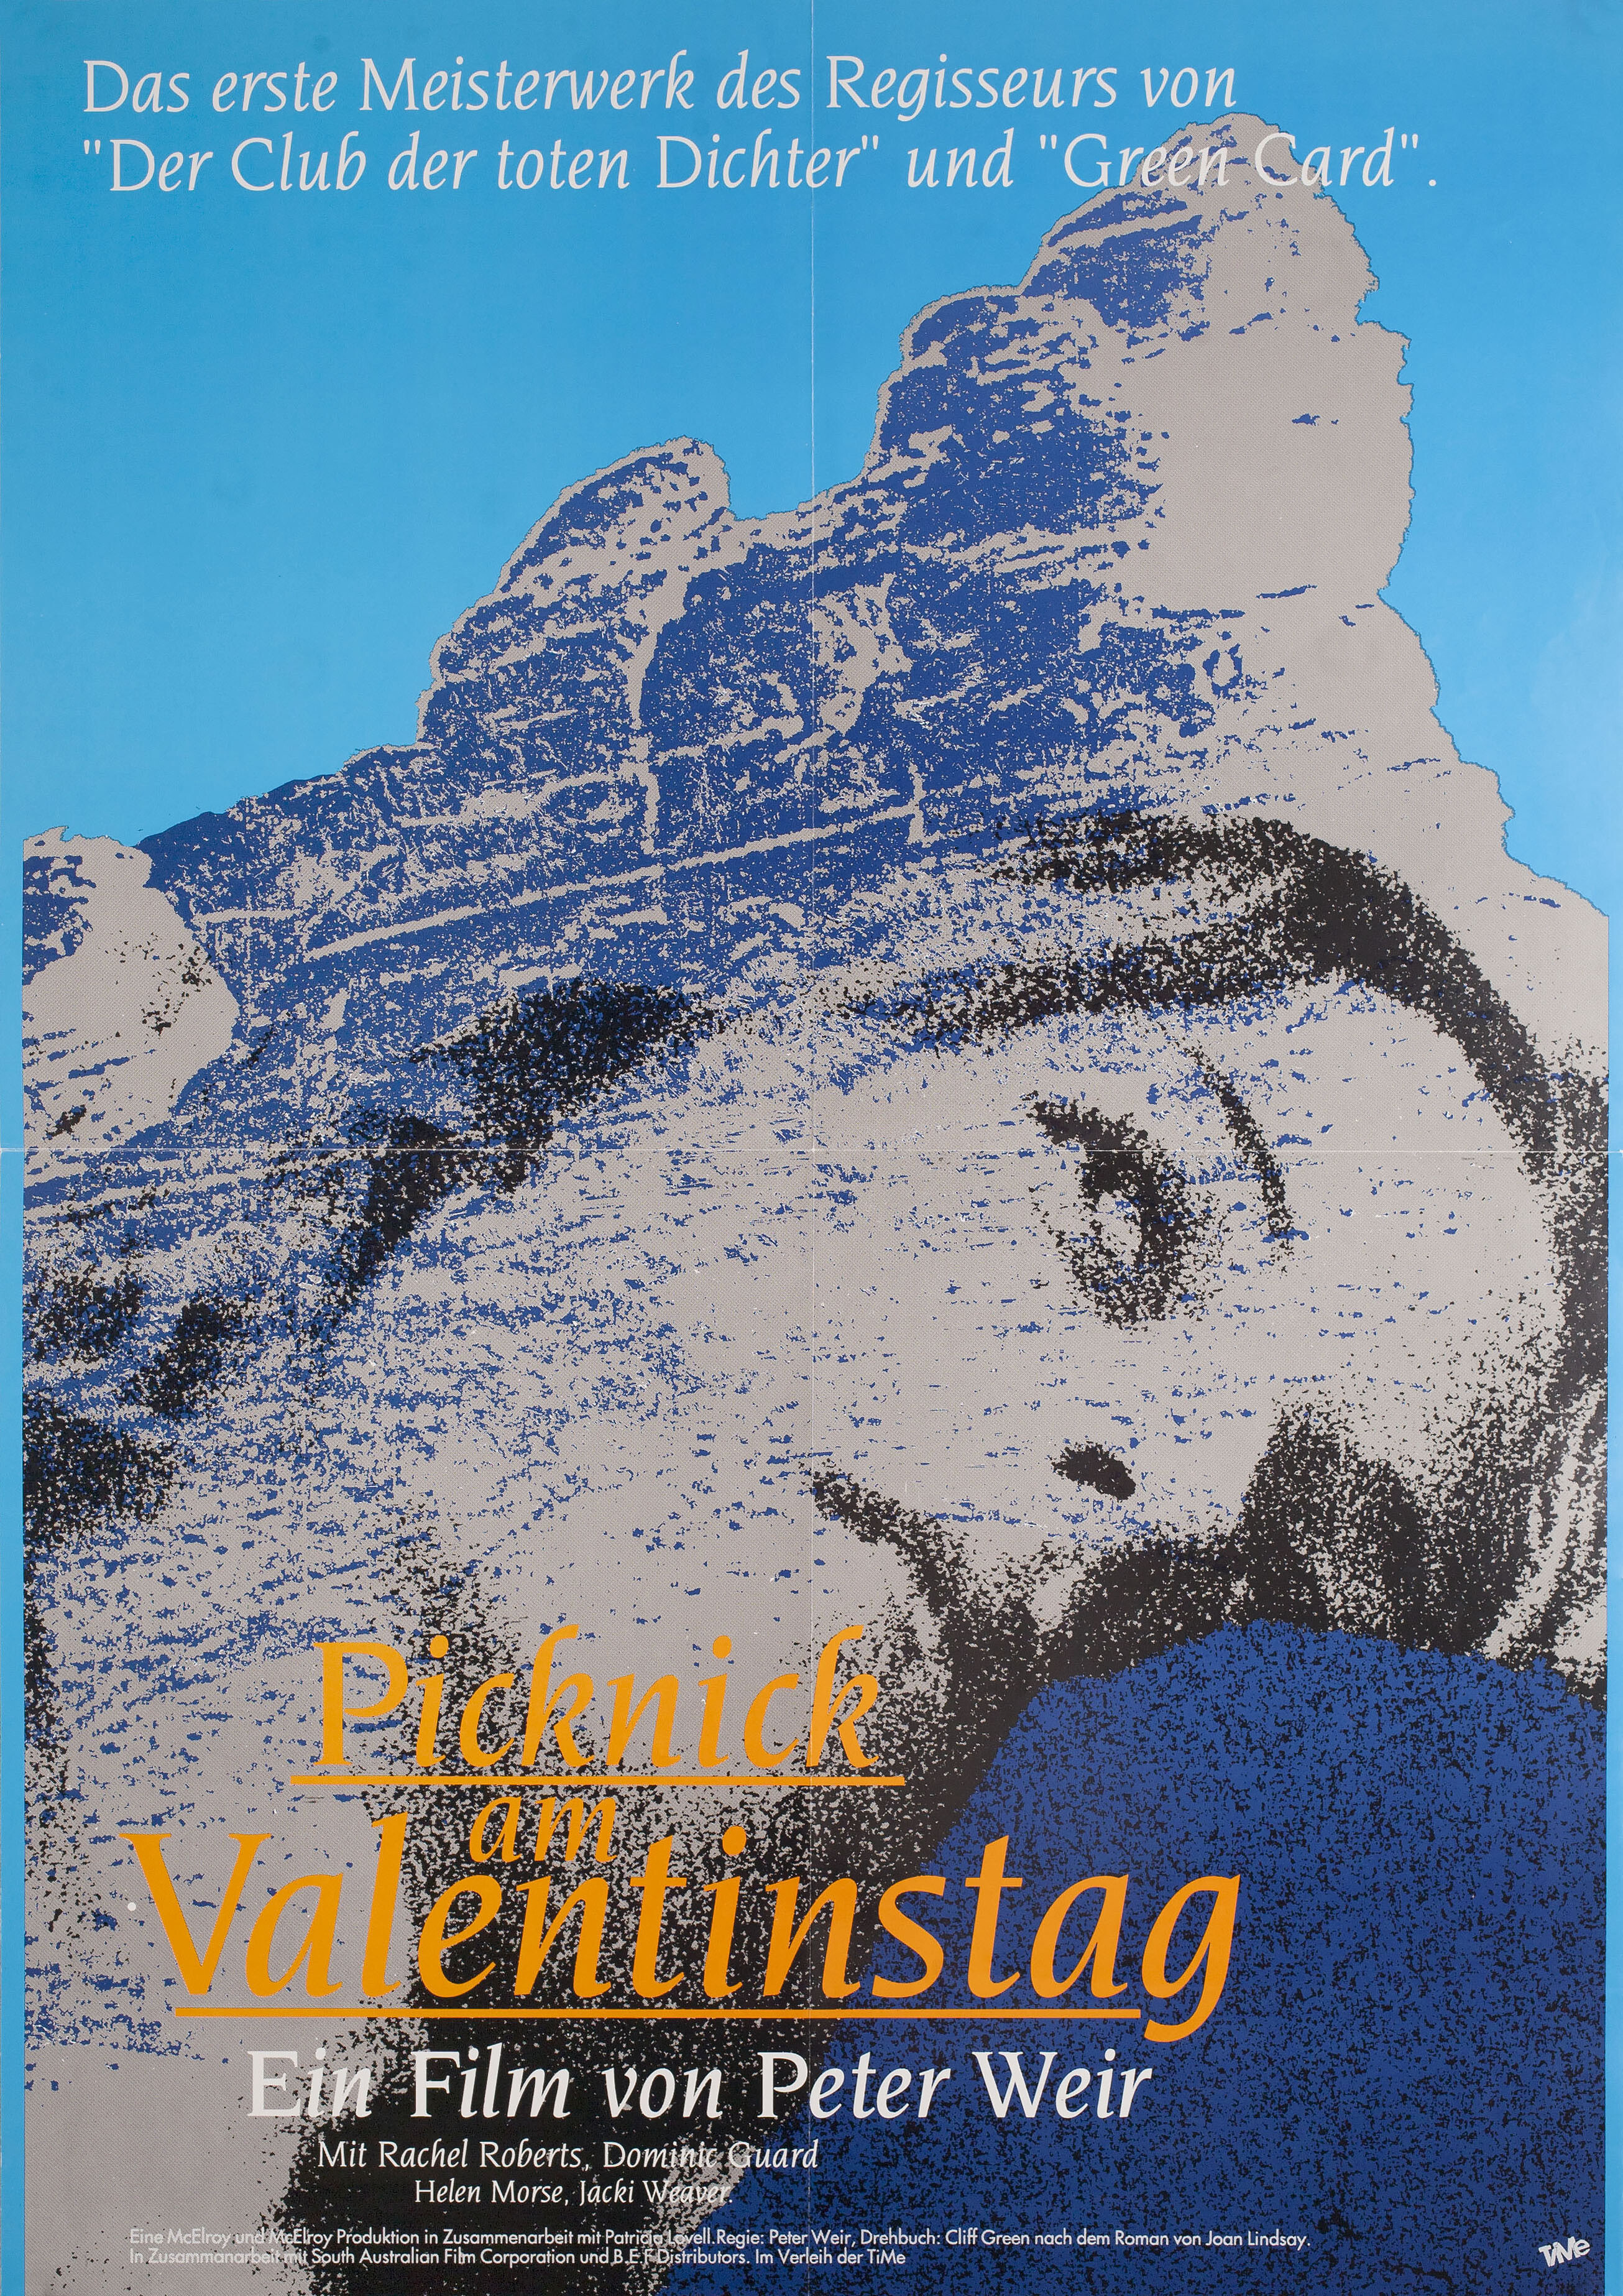 Пикник у Висячей скалы (Picnic at Hanging Rock, 1975), режиссёр Питер Уир, немецкий (ФРГ) постер к фильму (ужасы, 1989 год)